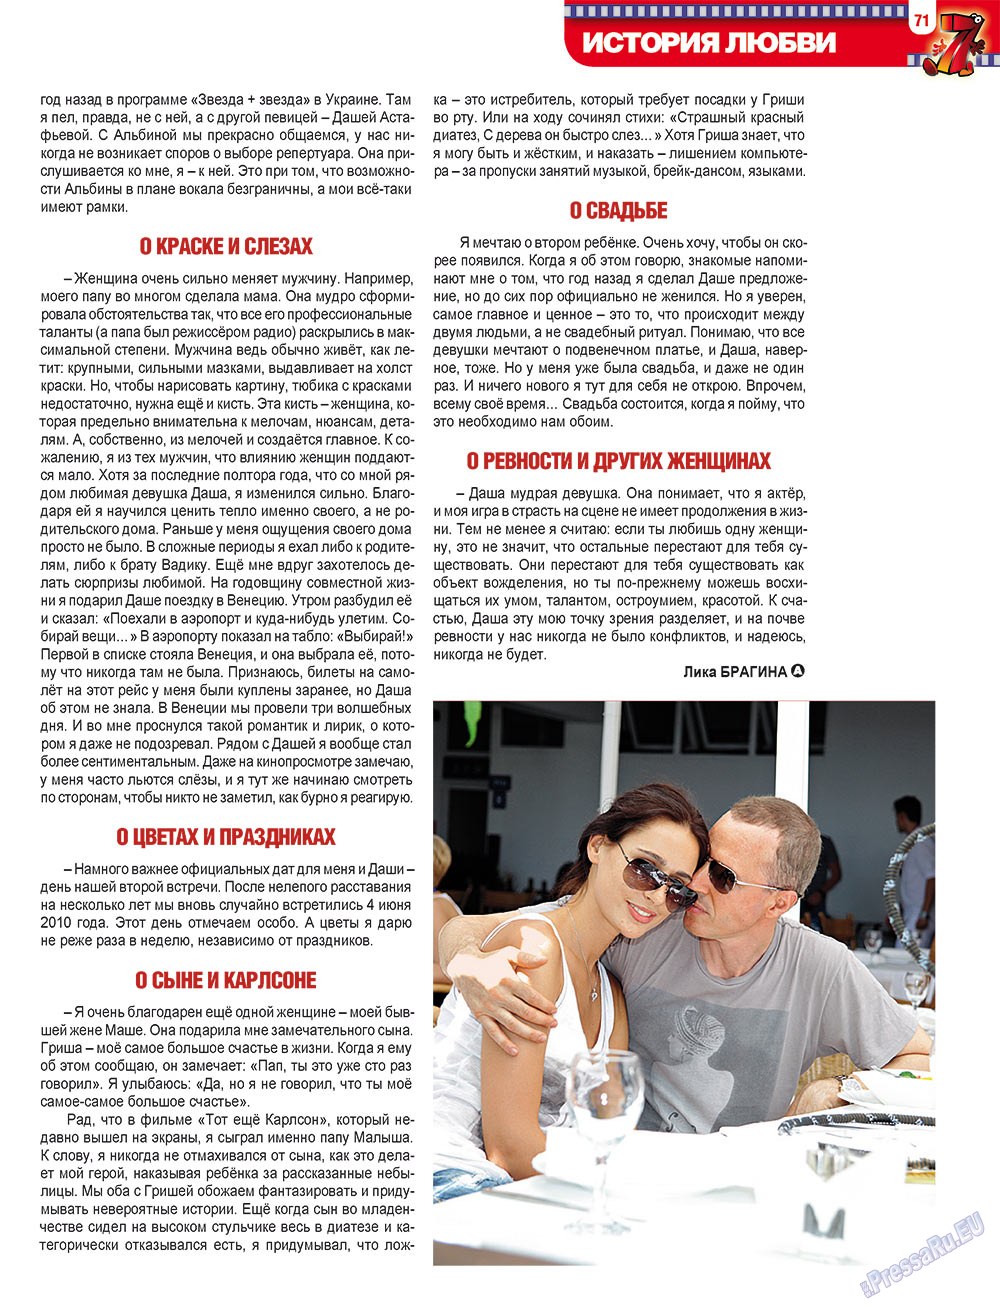 7плюс7я, журнал. 2012 №12 стр.71